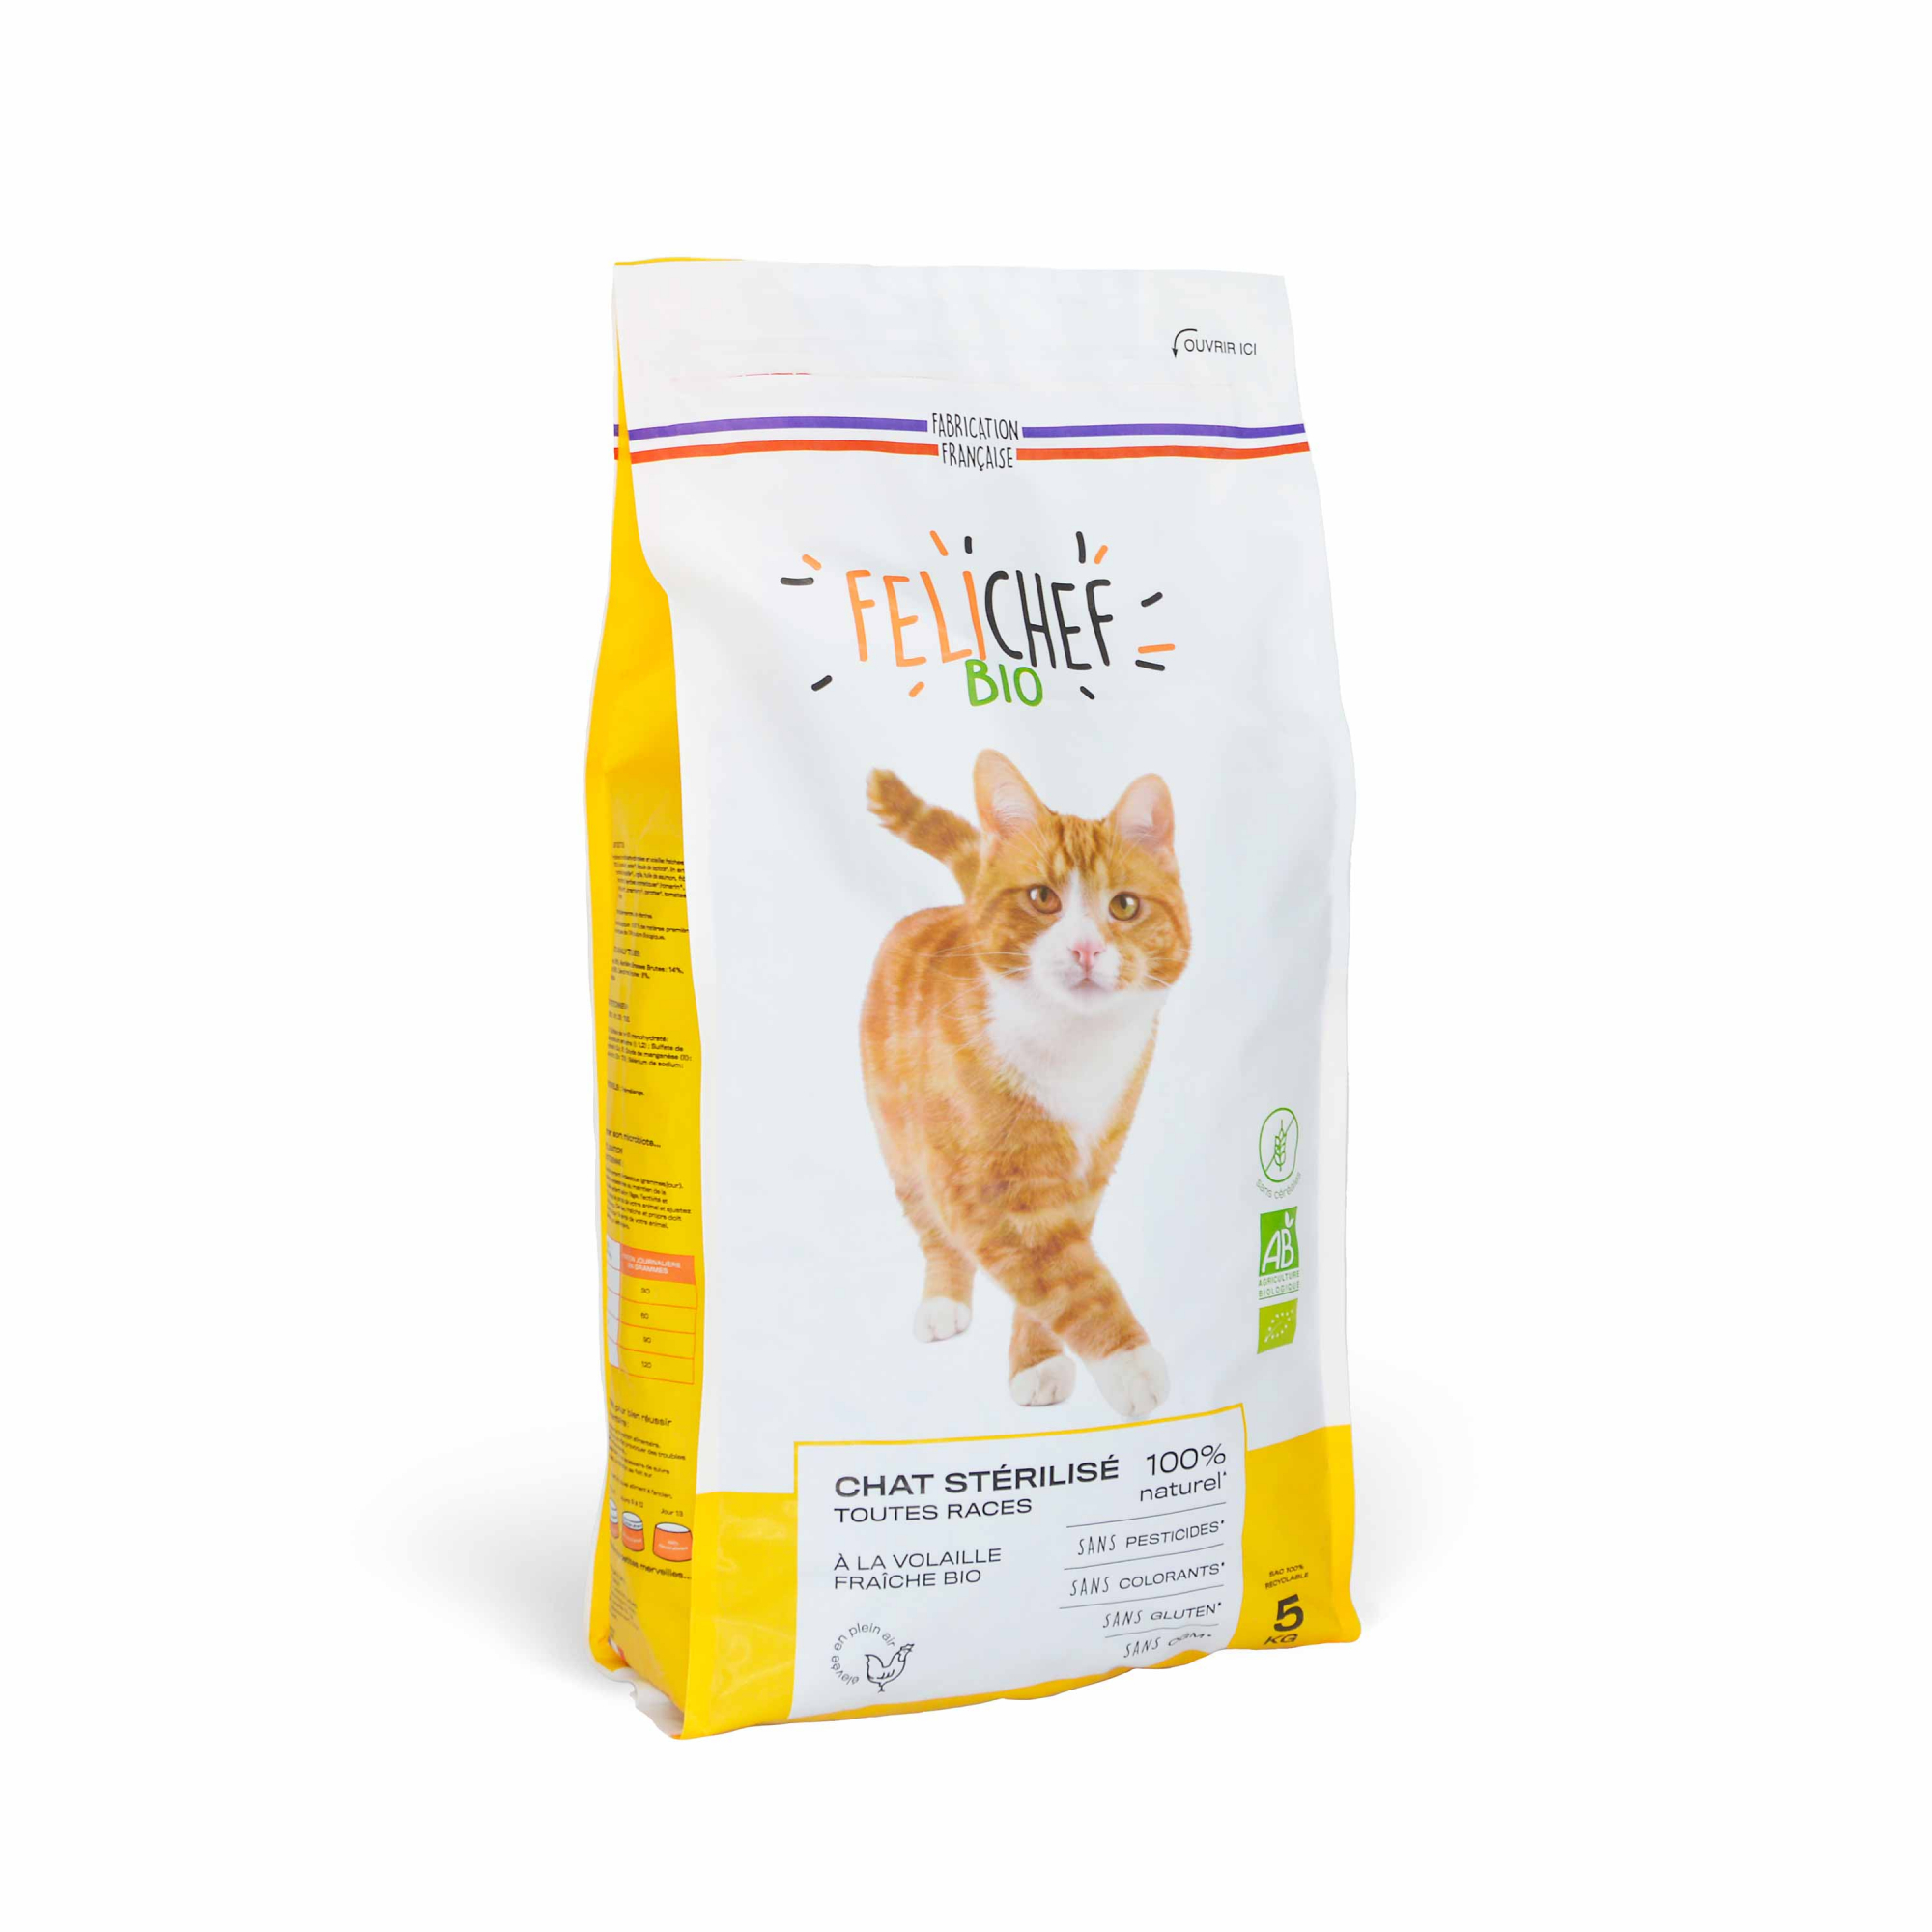 FELICHEF BIO Croquetes BIO - Ração seca biológica sem cereais para gato esterilizado